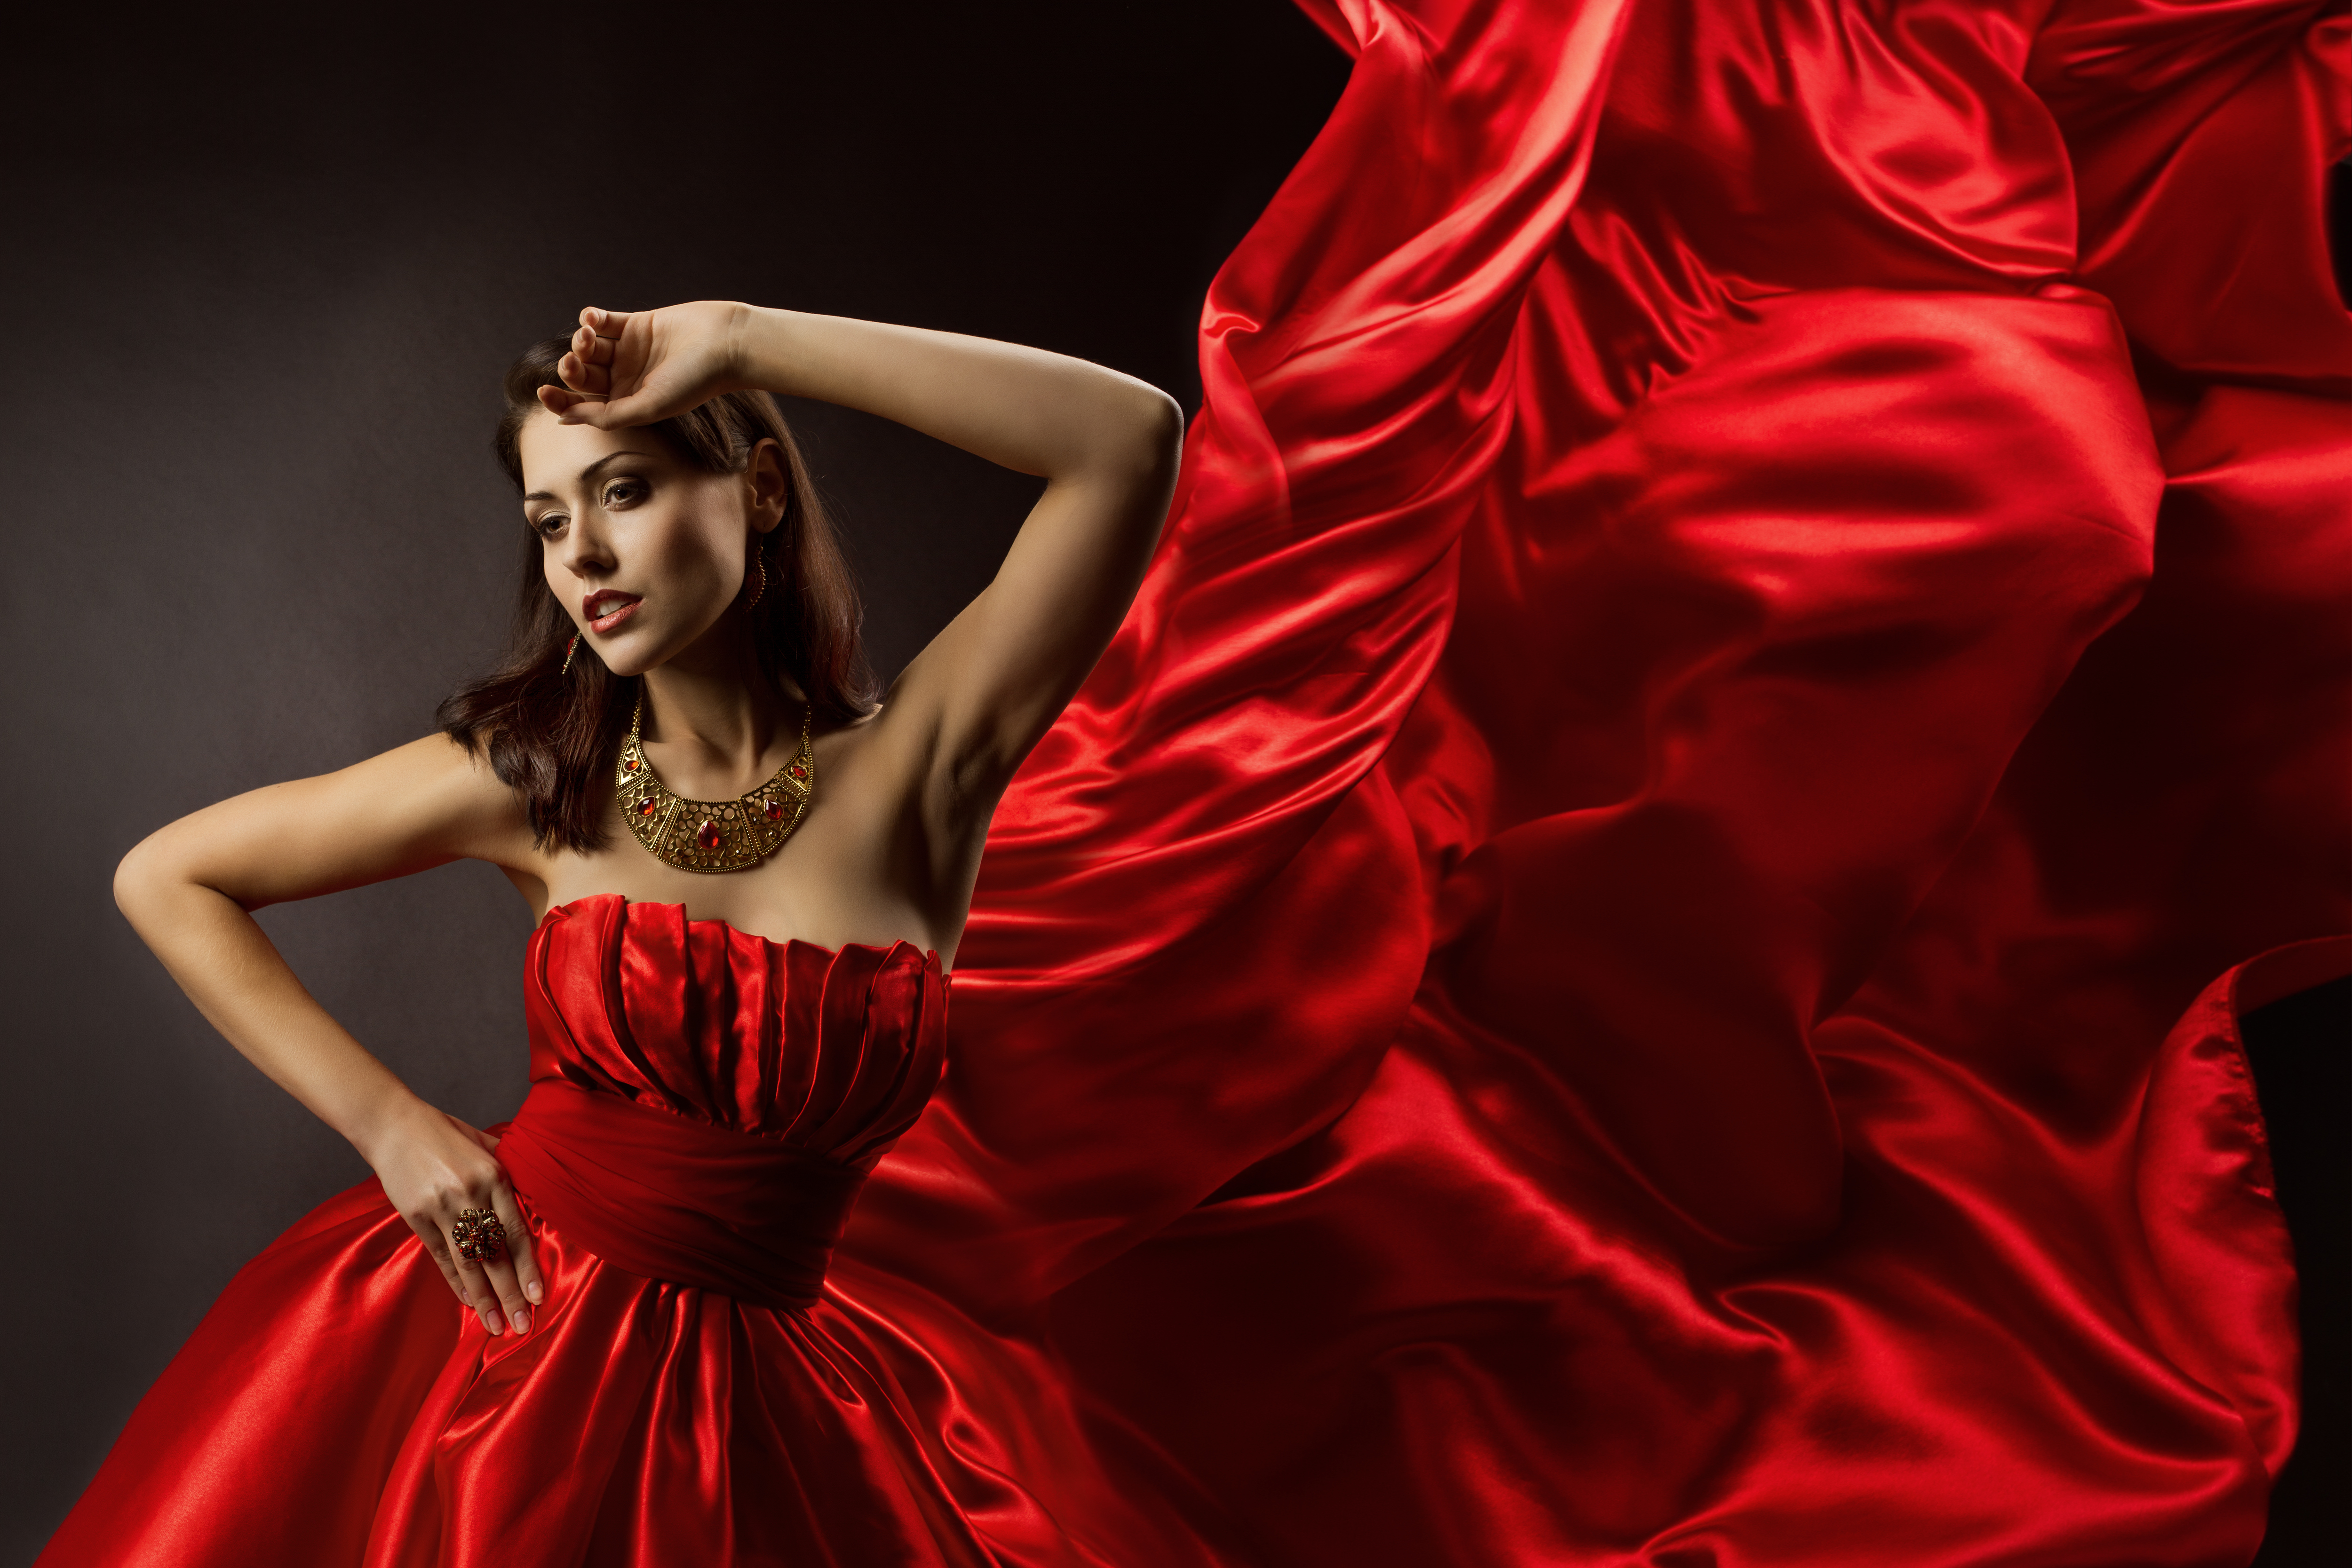 Аксесуари до червоного плаття, або Зашифрований виклик суспільству